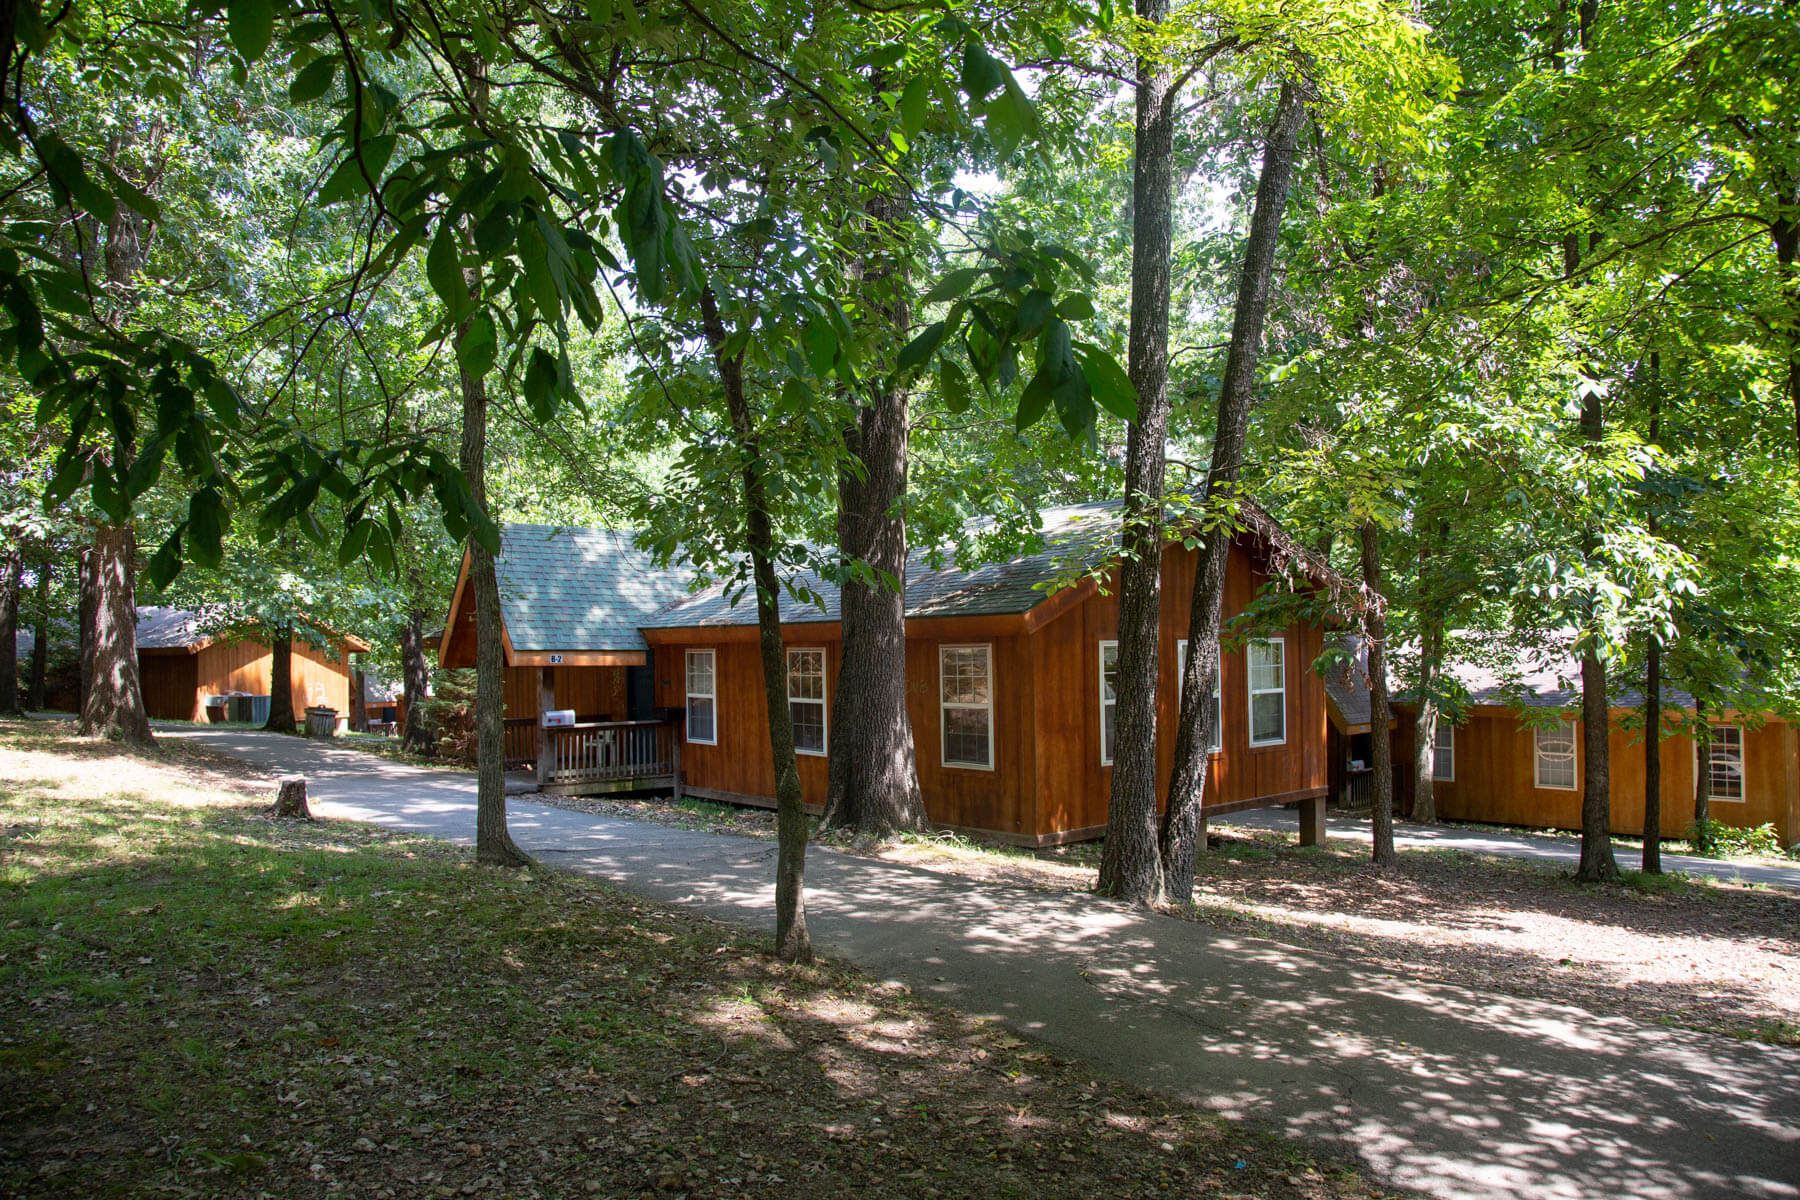 Camping cabins at Camp Barnabas